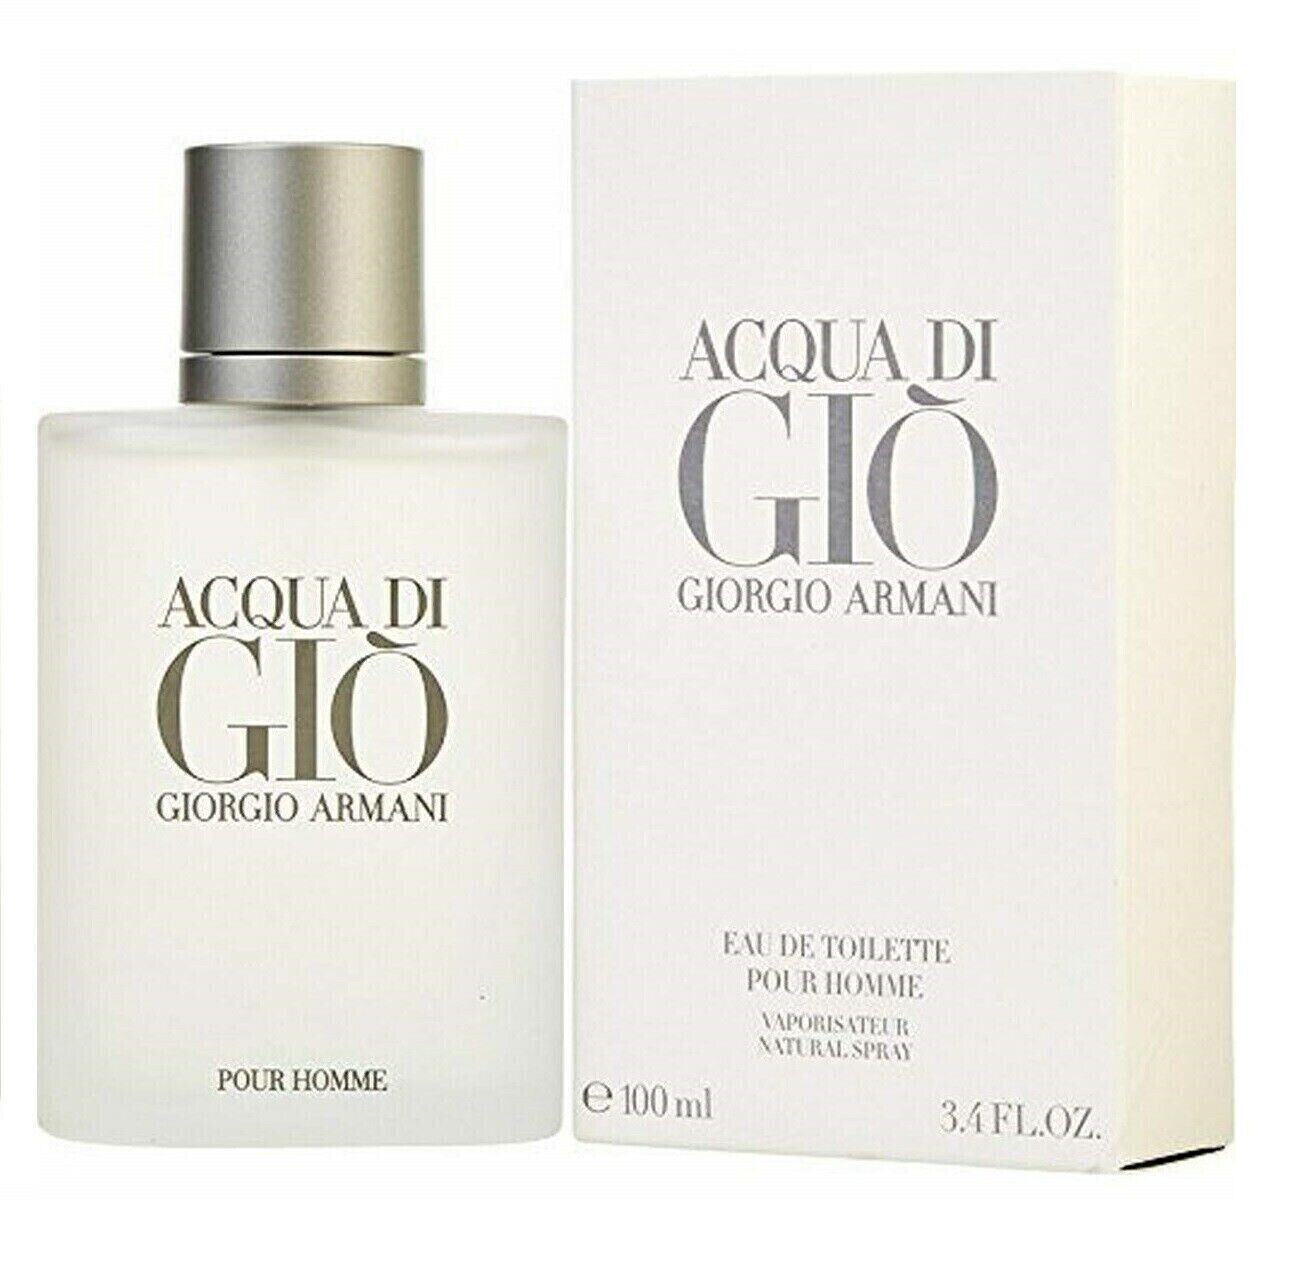 Giorgio Armani Acqua Di Gio 3.4 oz Men's Eau de Toilette Spray New & Sealed